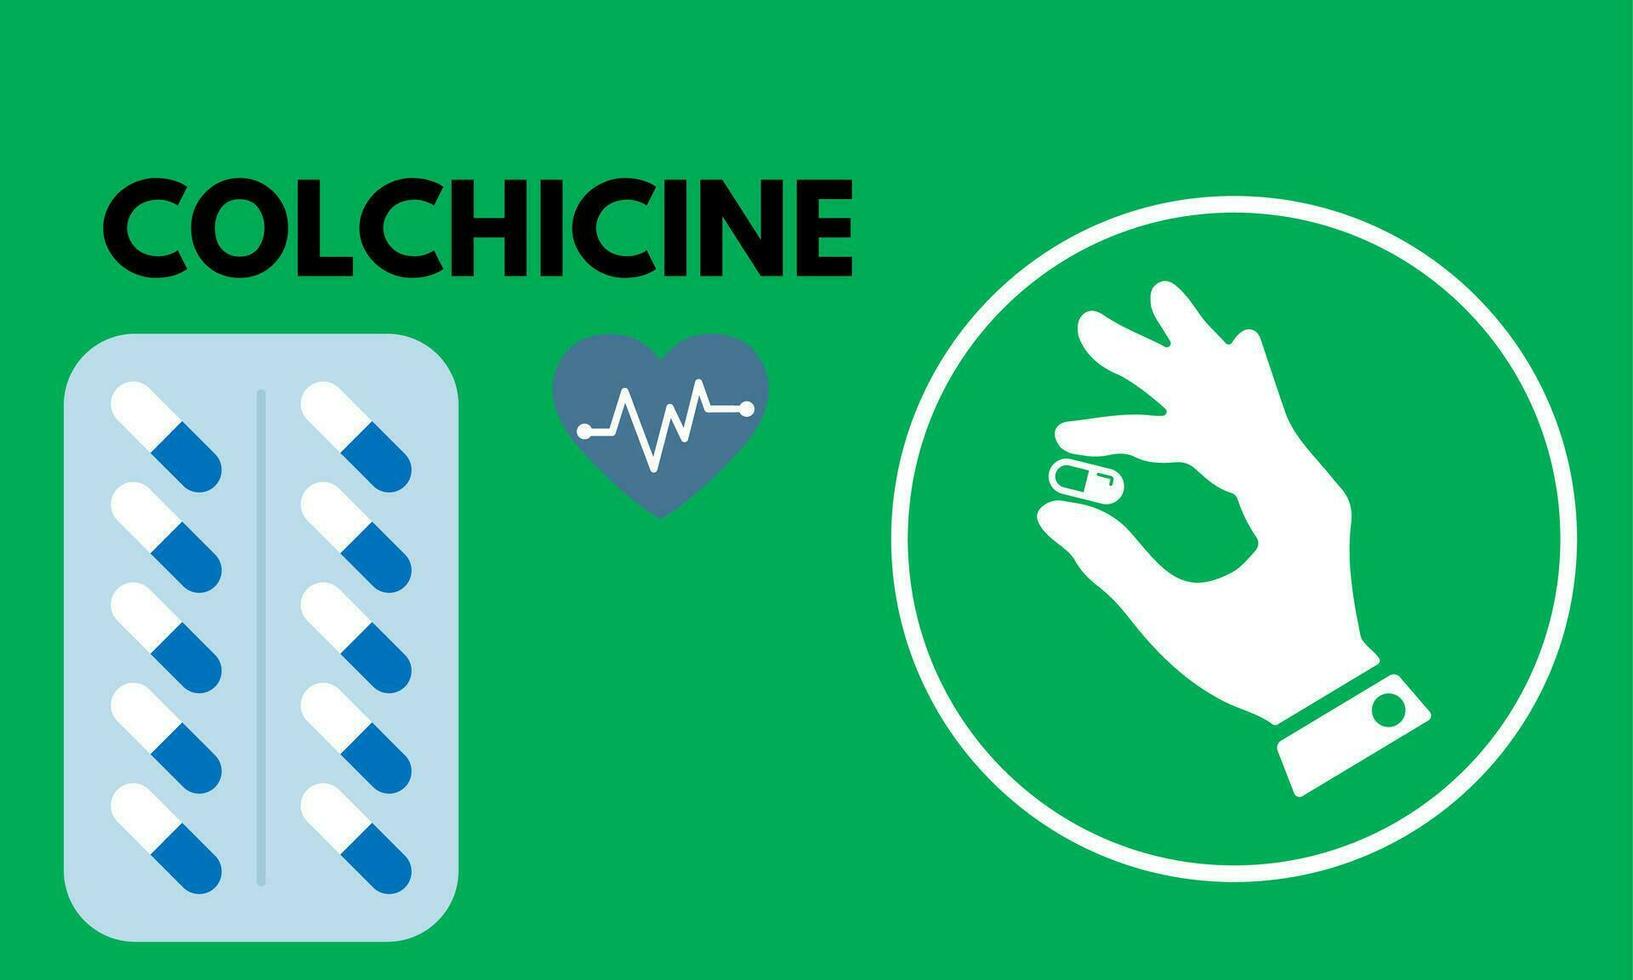 colchicine tablette proche en haut de des médicaments utilisé à traiter goutte et behcet maladie, péricardite, familiale méditerranéen fièvre. vecteur illustration